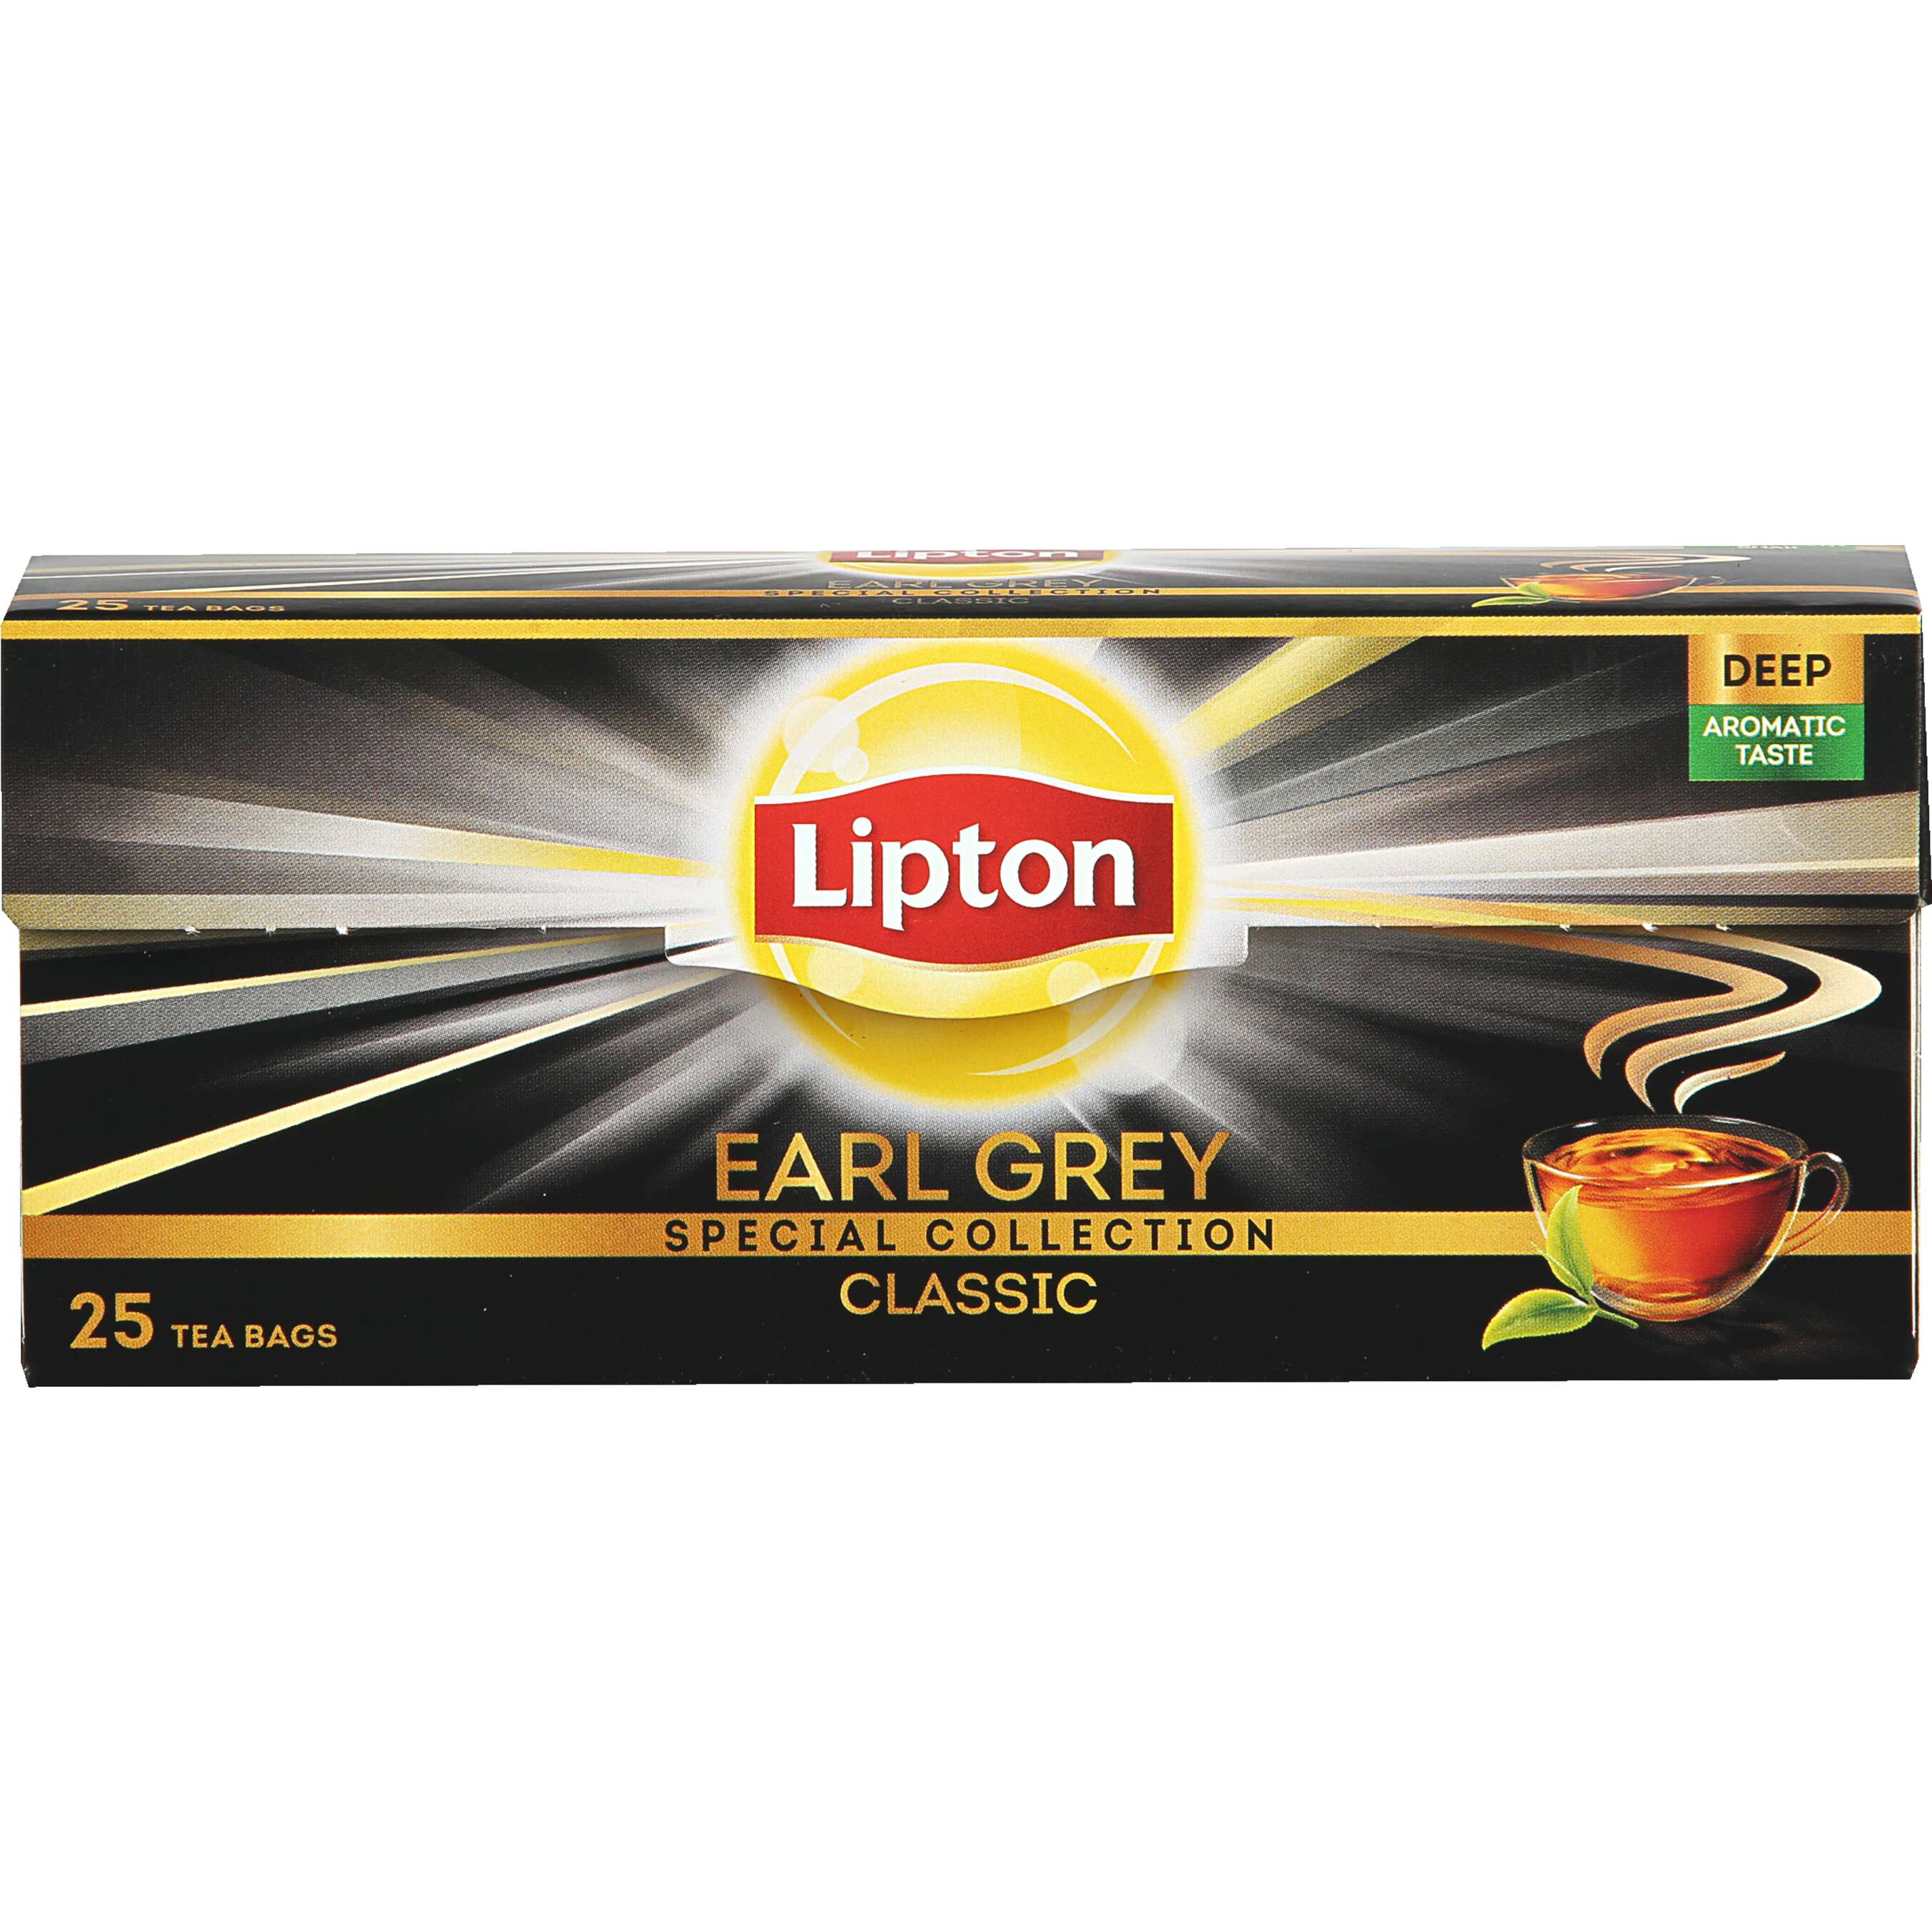 Zobrazit nabídku Lipton Černý čaj